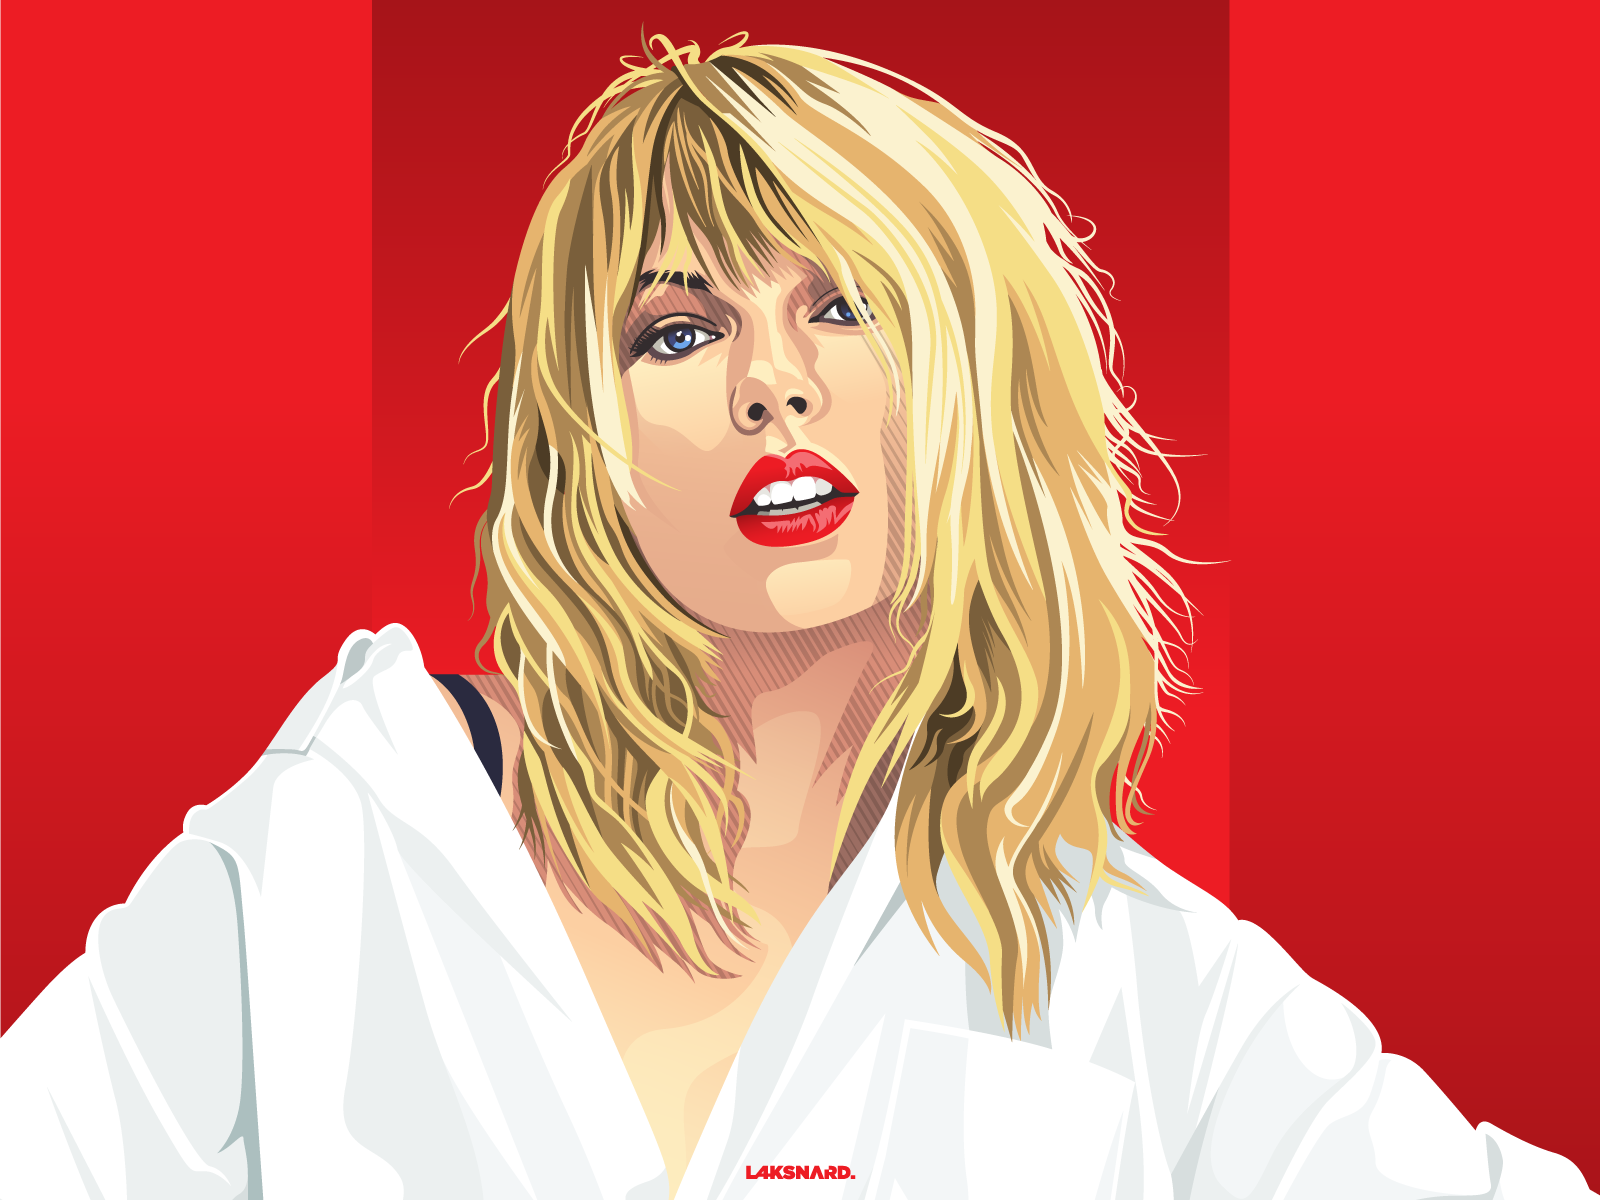 Taylor Swift Portrait by Laksana Ardie on Dribbble